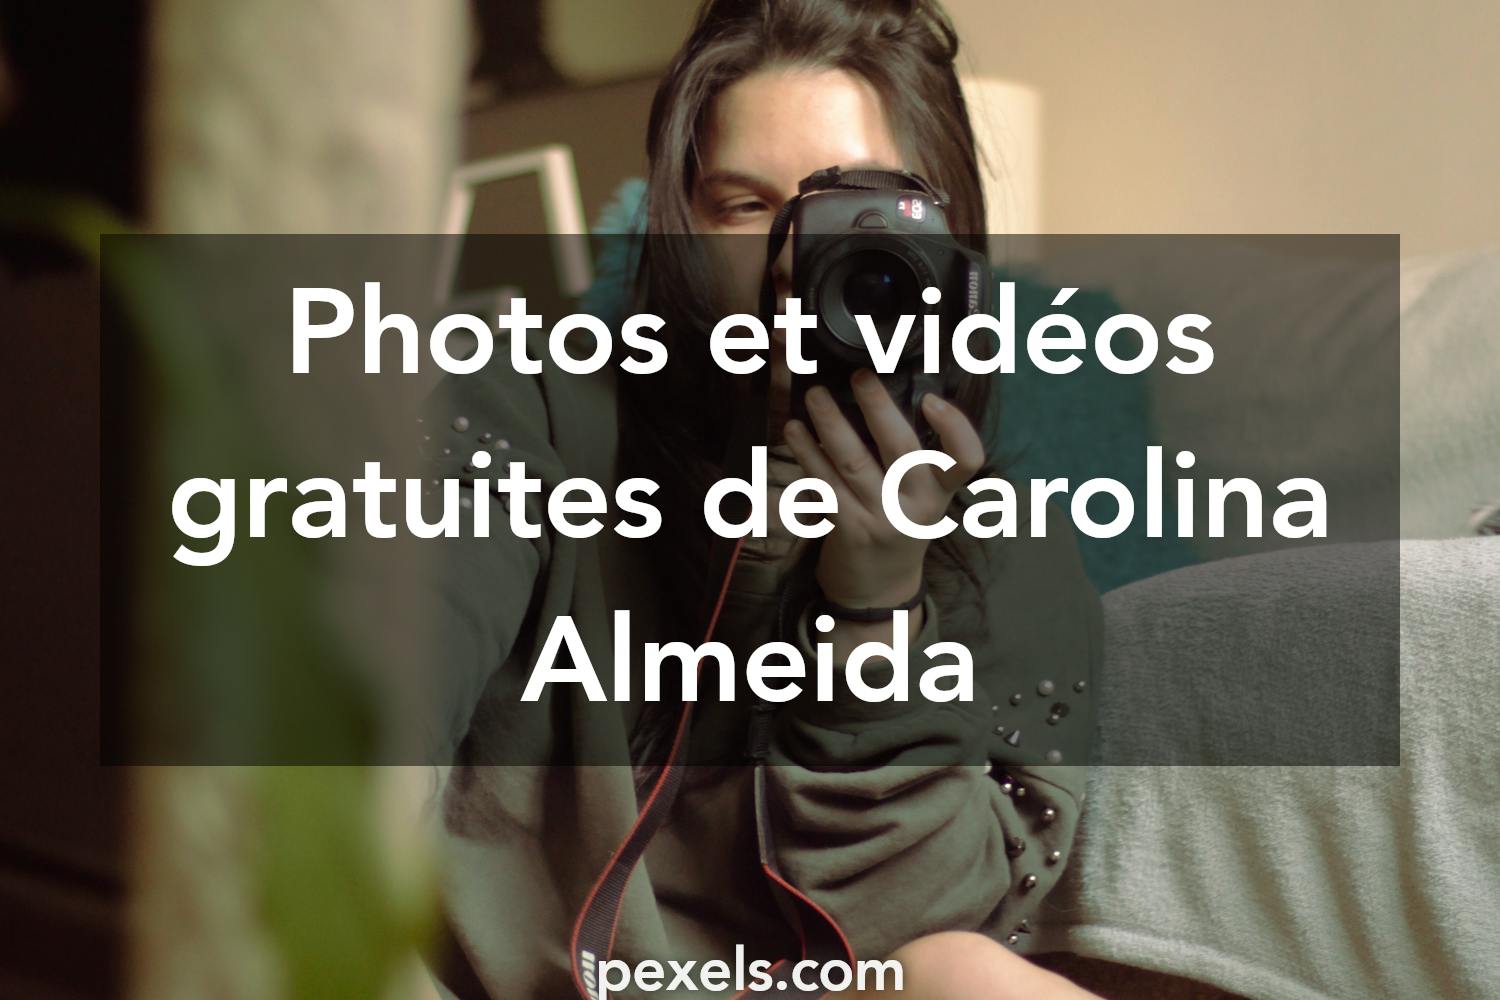 Carolina Almeida - Photographie